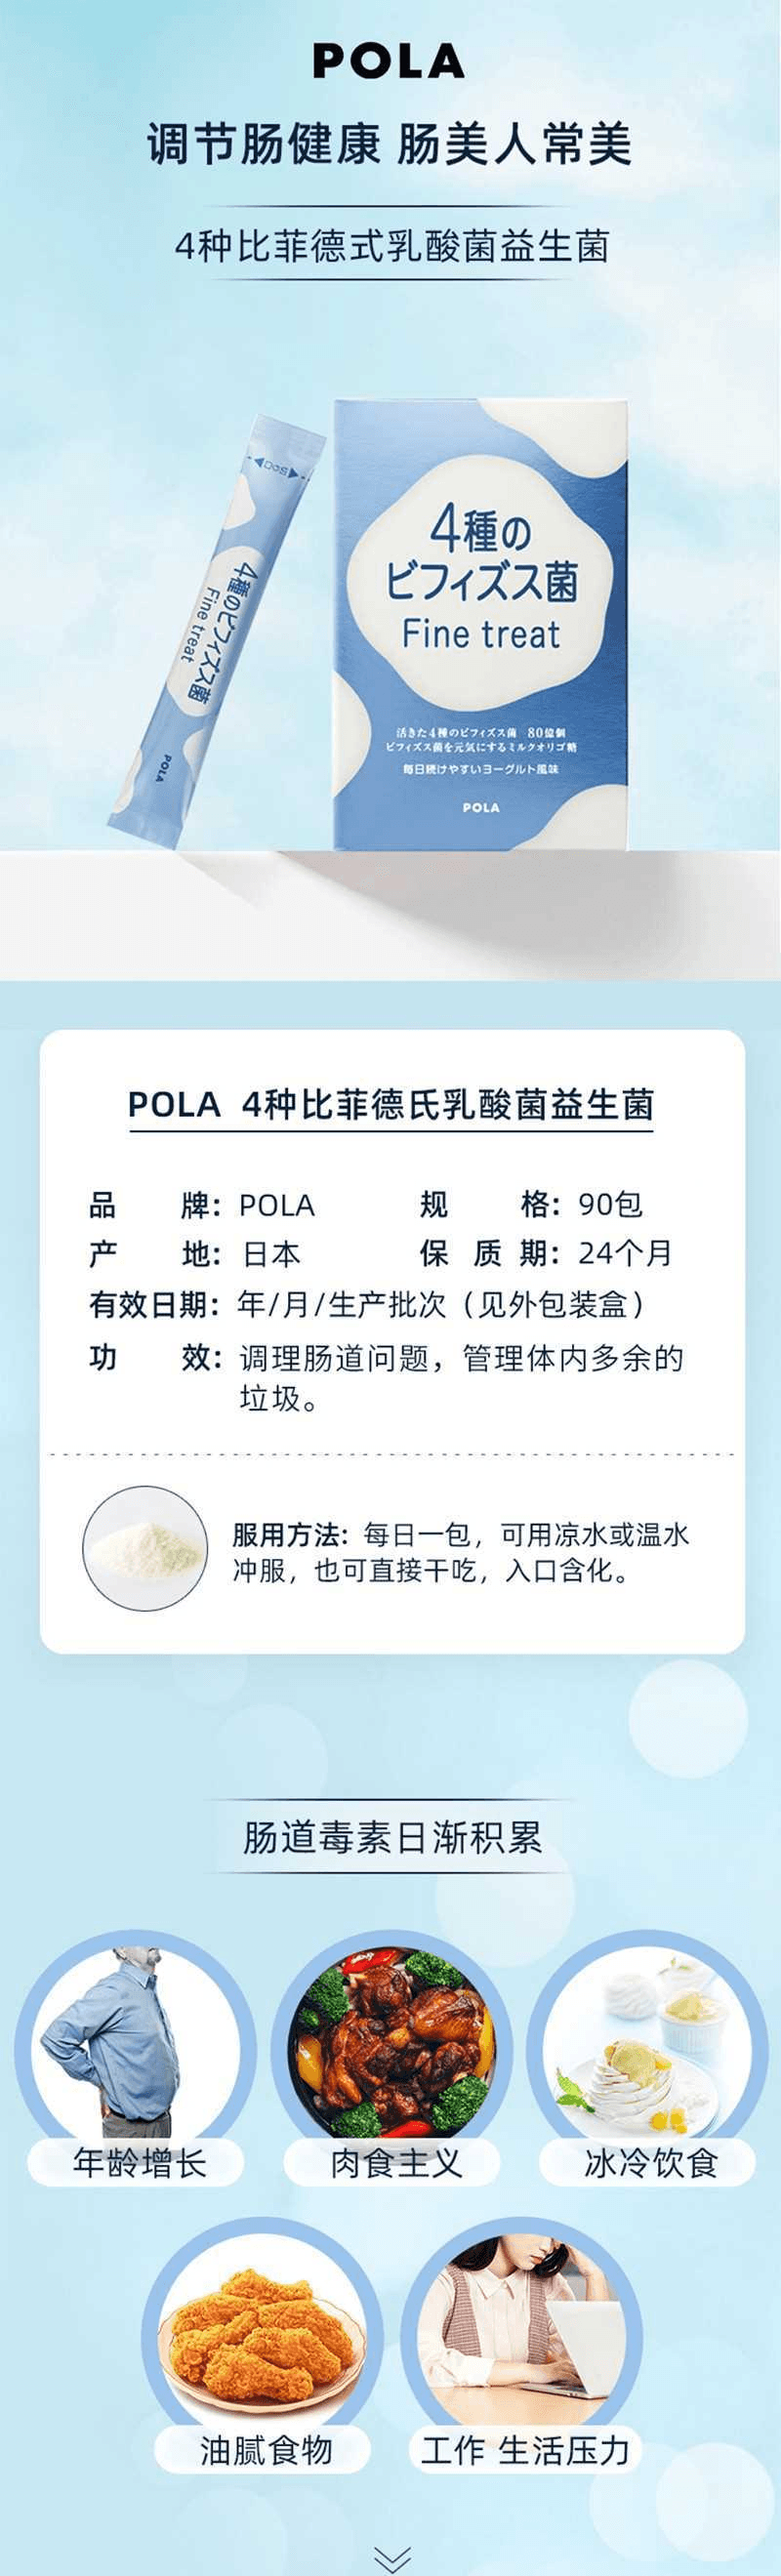 【日本直效郵件】POLA寶麗 比菲德氏菌整腸 乳酸菌顆粒 90包三個月量